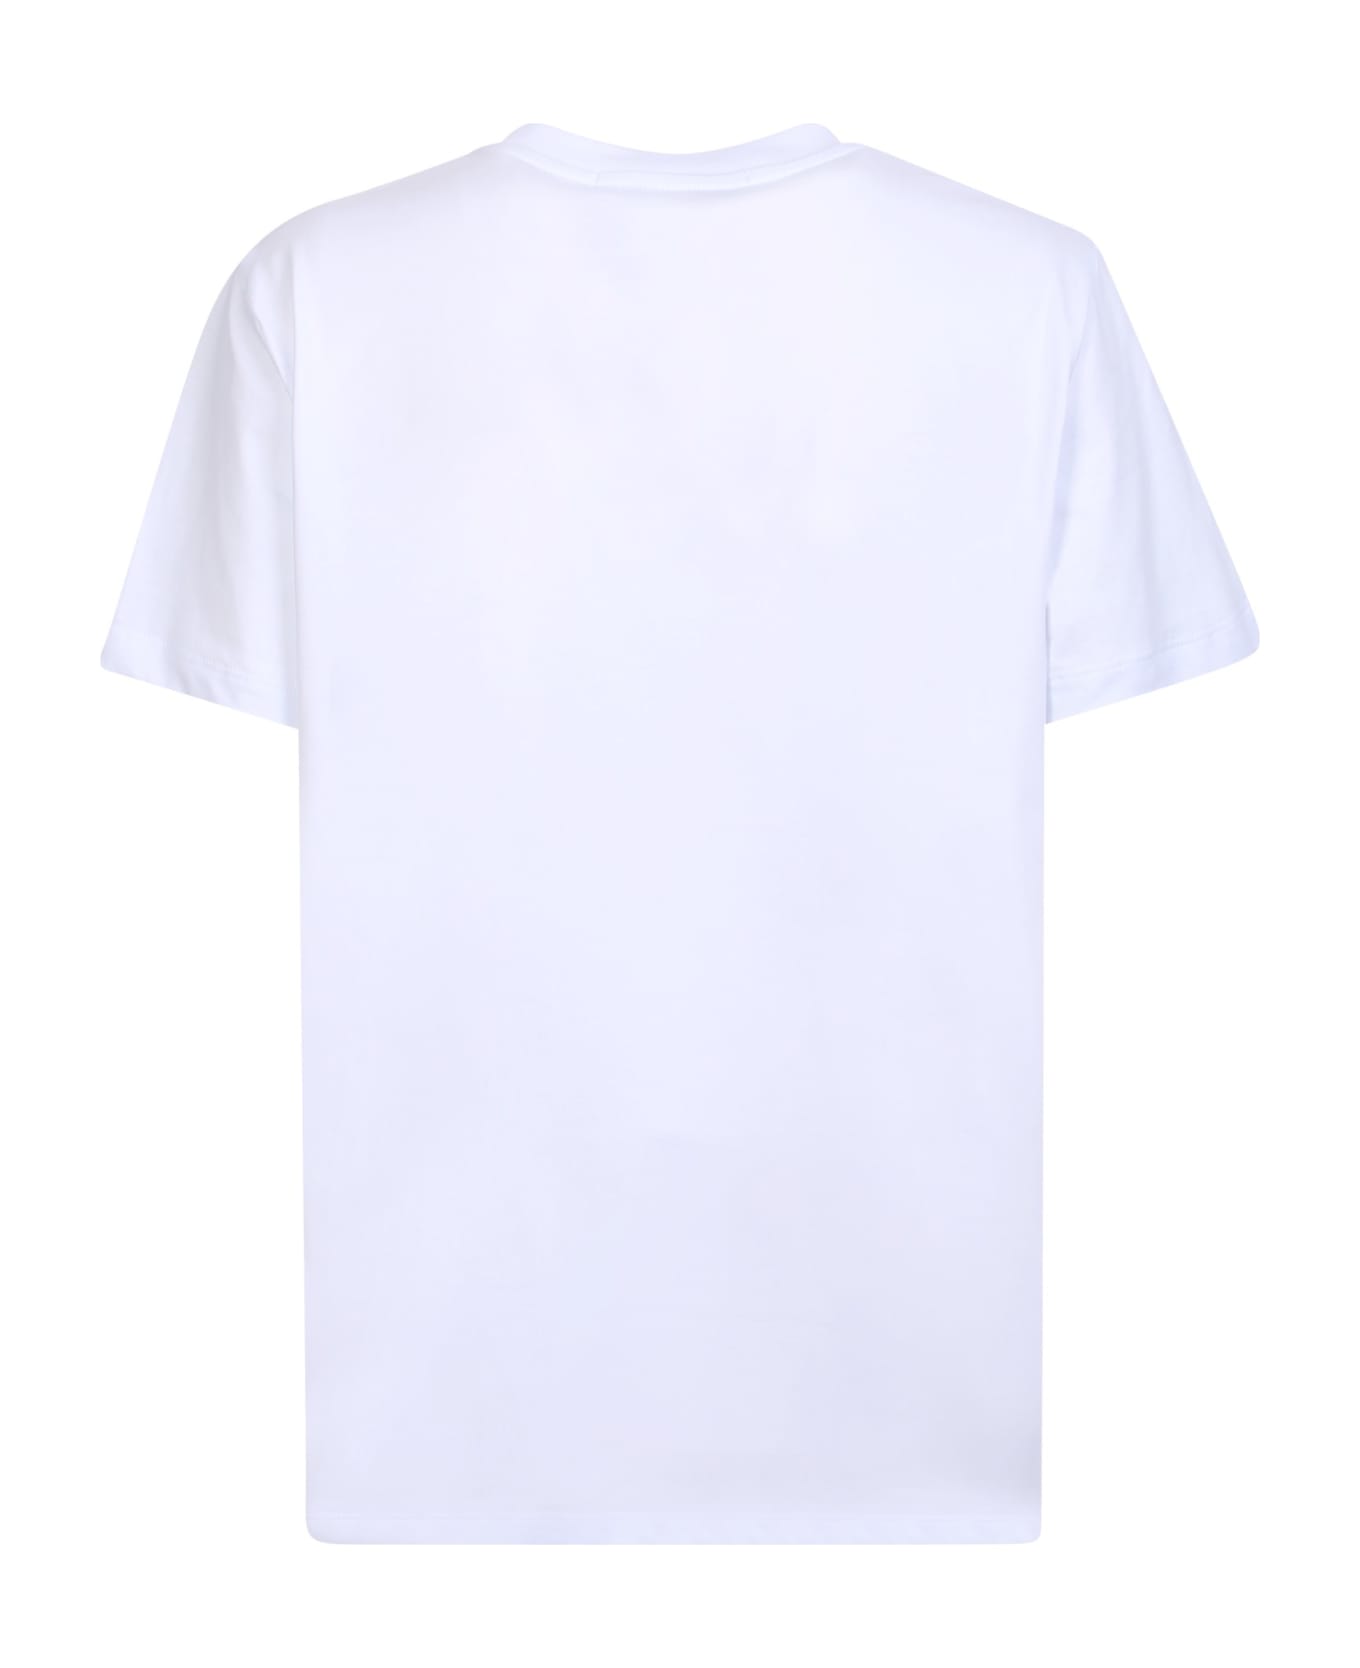 MSGM Bold Logo White And Black T-shirt - White